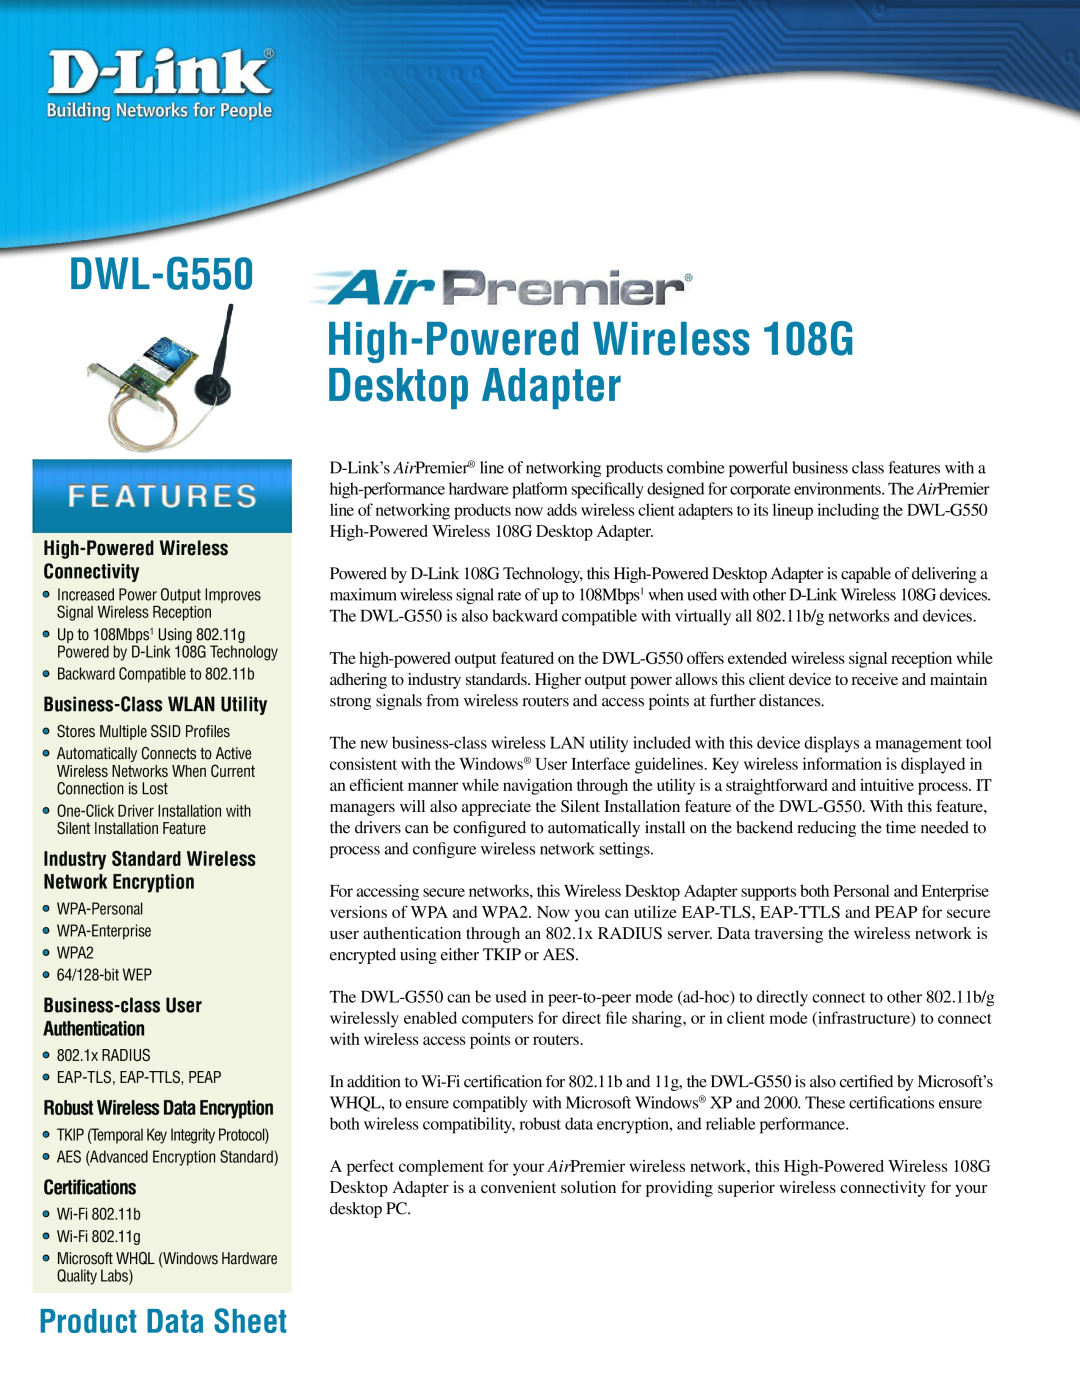 D-Link DWL-G550 manual Product Data Sheet, High-Powered Wireless 108G Desktop Adapter, Business-Class WLAN Utility 